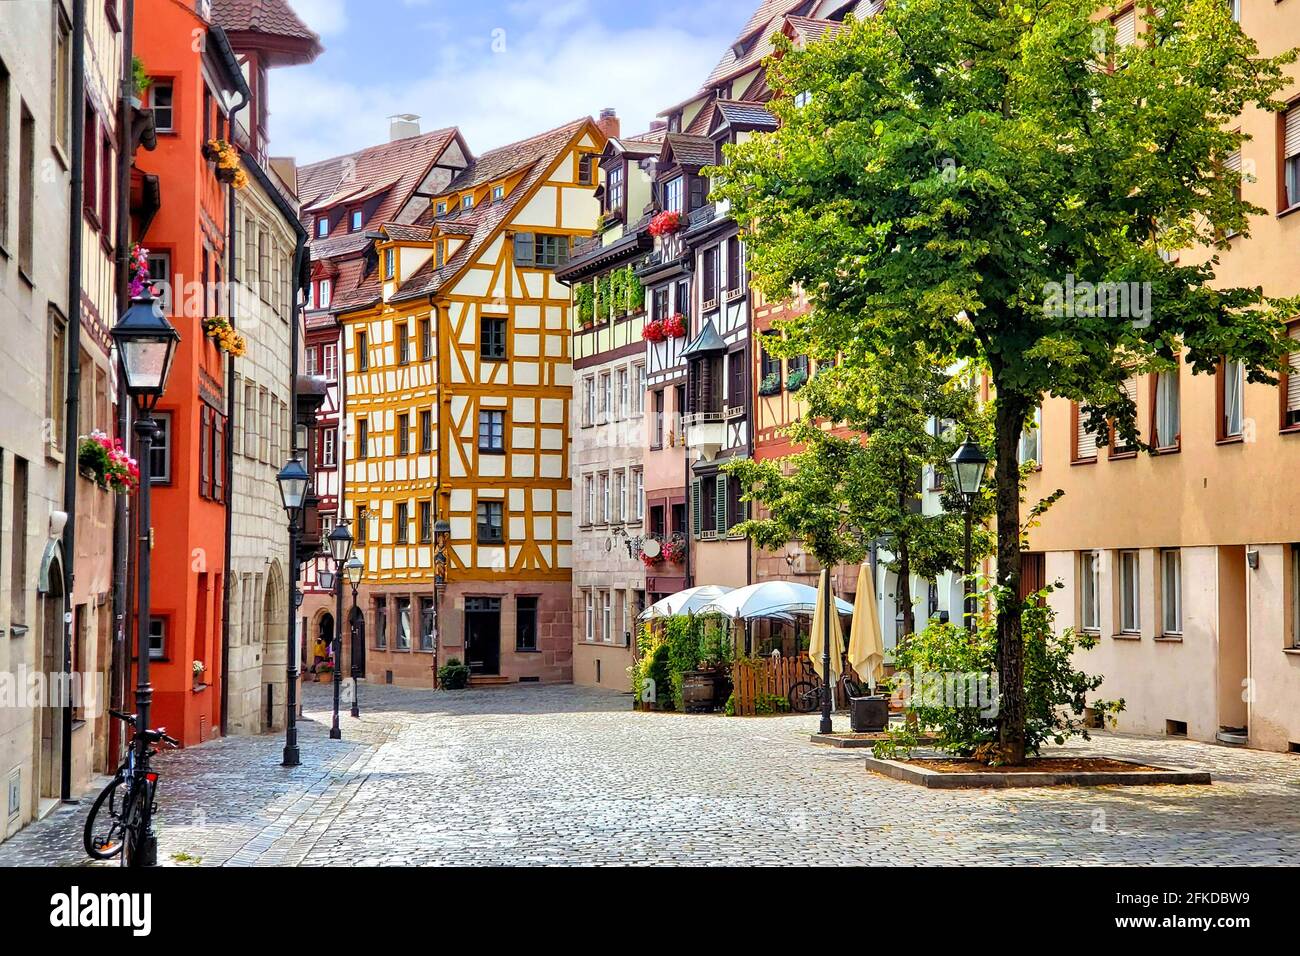 Belle rue de bâtiments à colombages dans la vieille ville pittoresque de Nuremberg, Bavière, Allemagne Banque D'Images